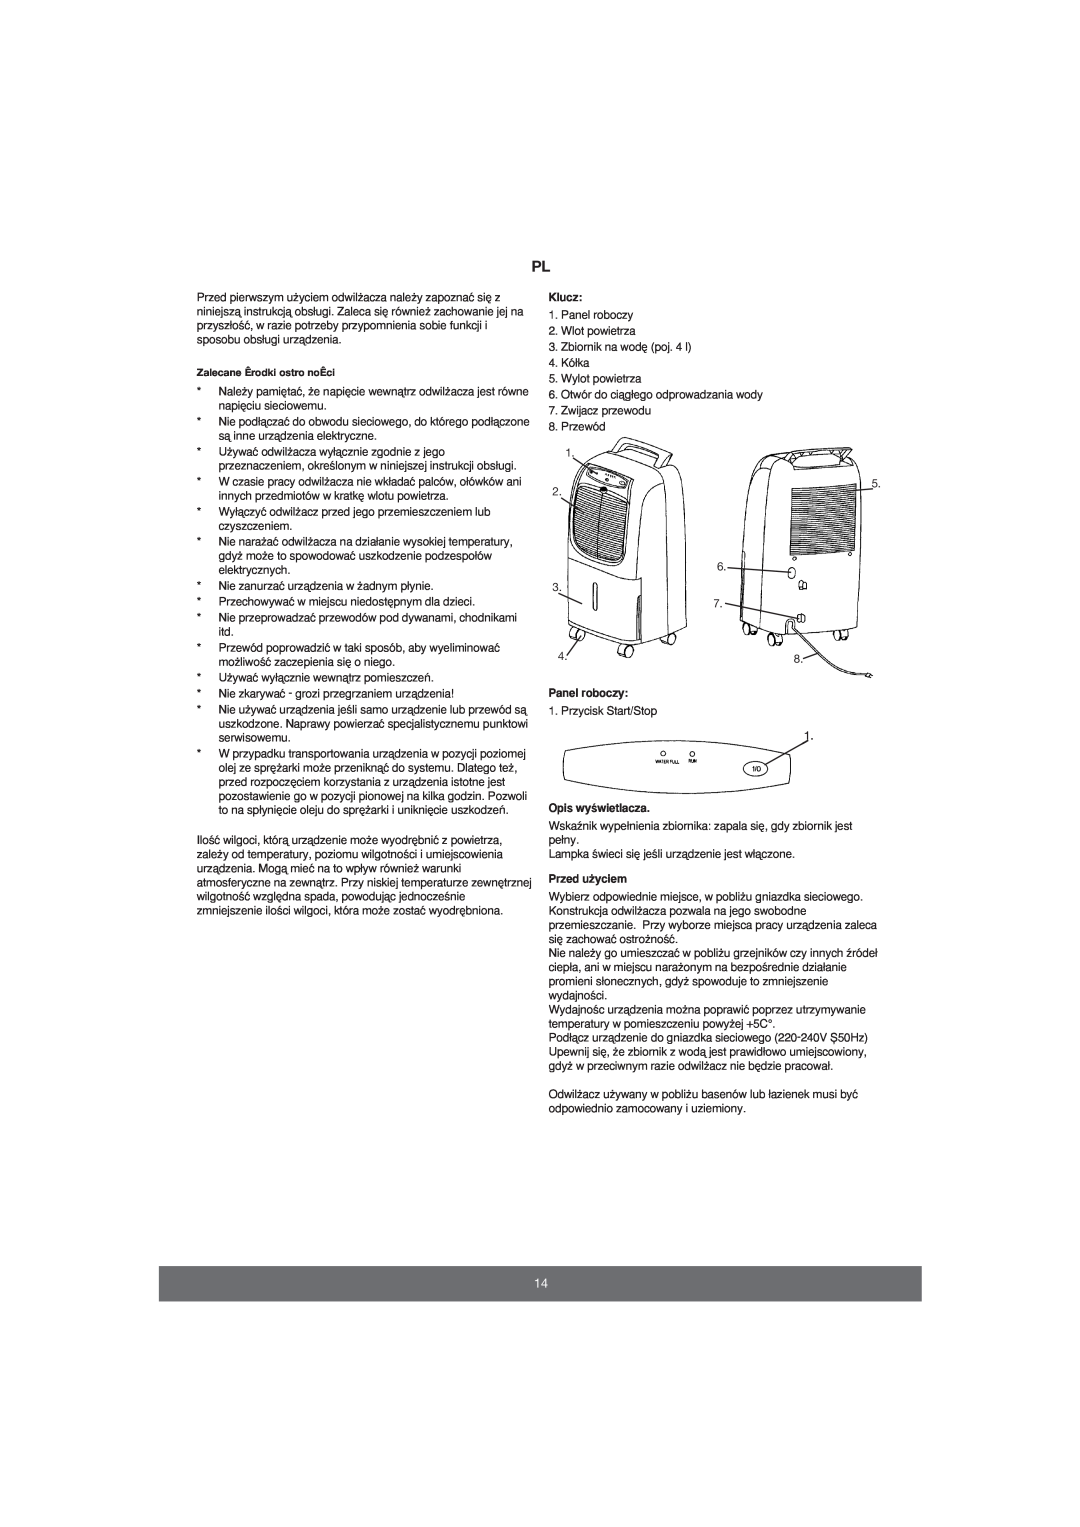 Melissa 676-001 manual Klucz, Panel roboczy, Opis wyÊwietlacza, Przed u˝yciem 